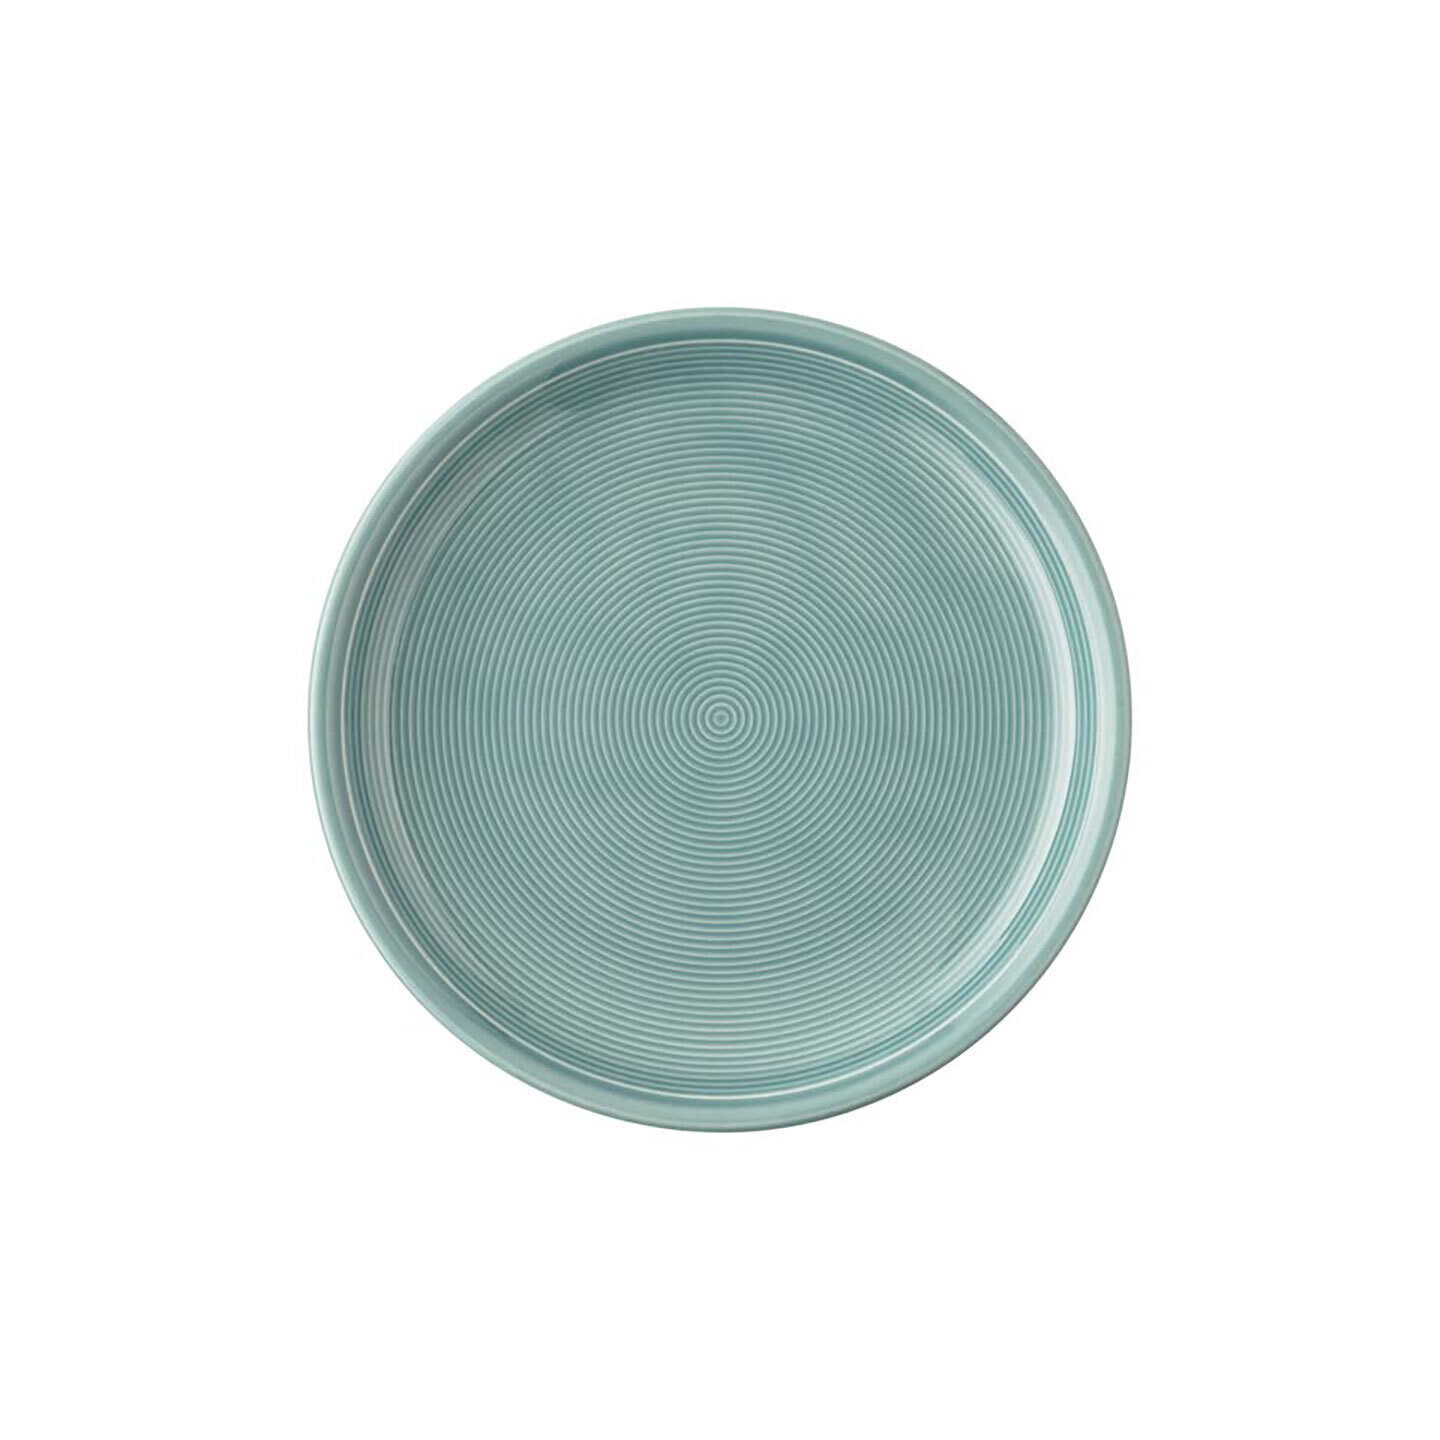 Thomas Trend Ice Blue Salad Plate 11400-401921-10222